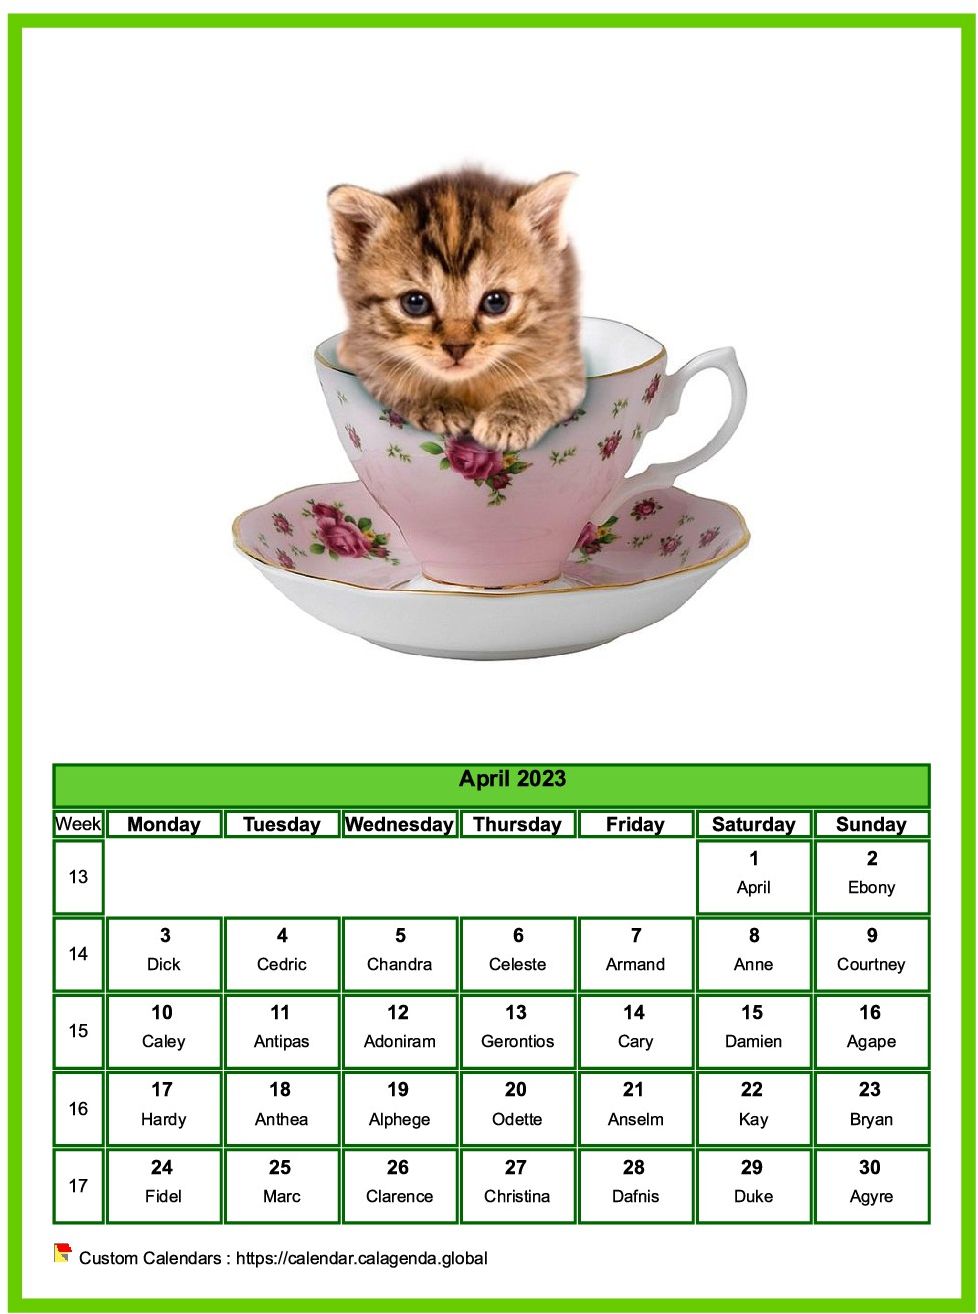 Calendar April 2023 cats